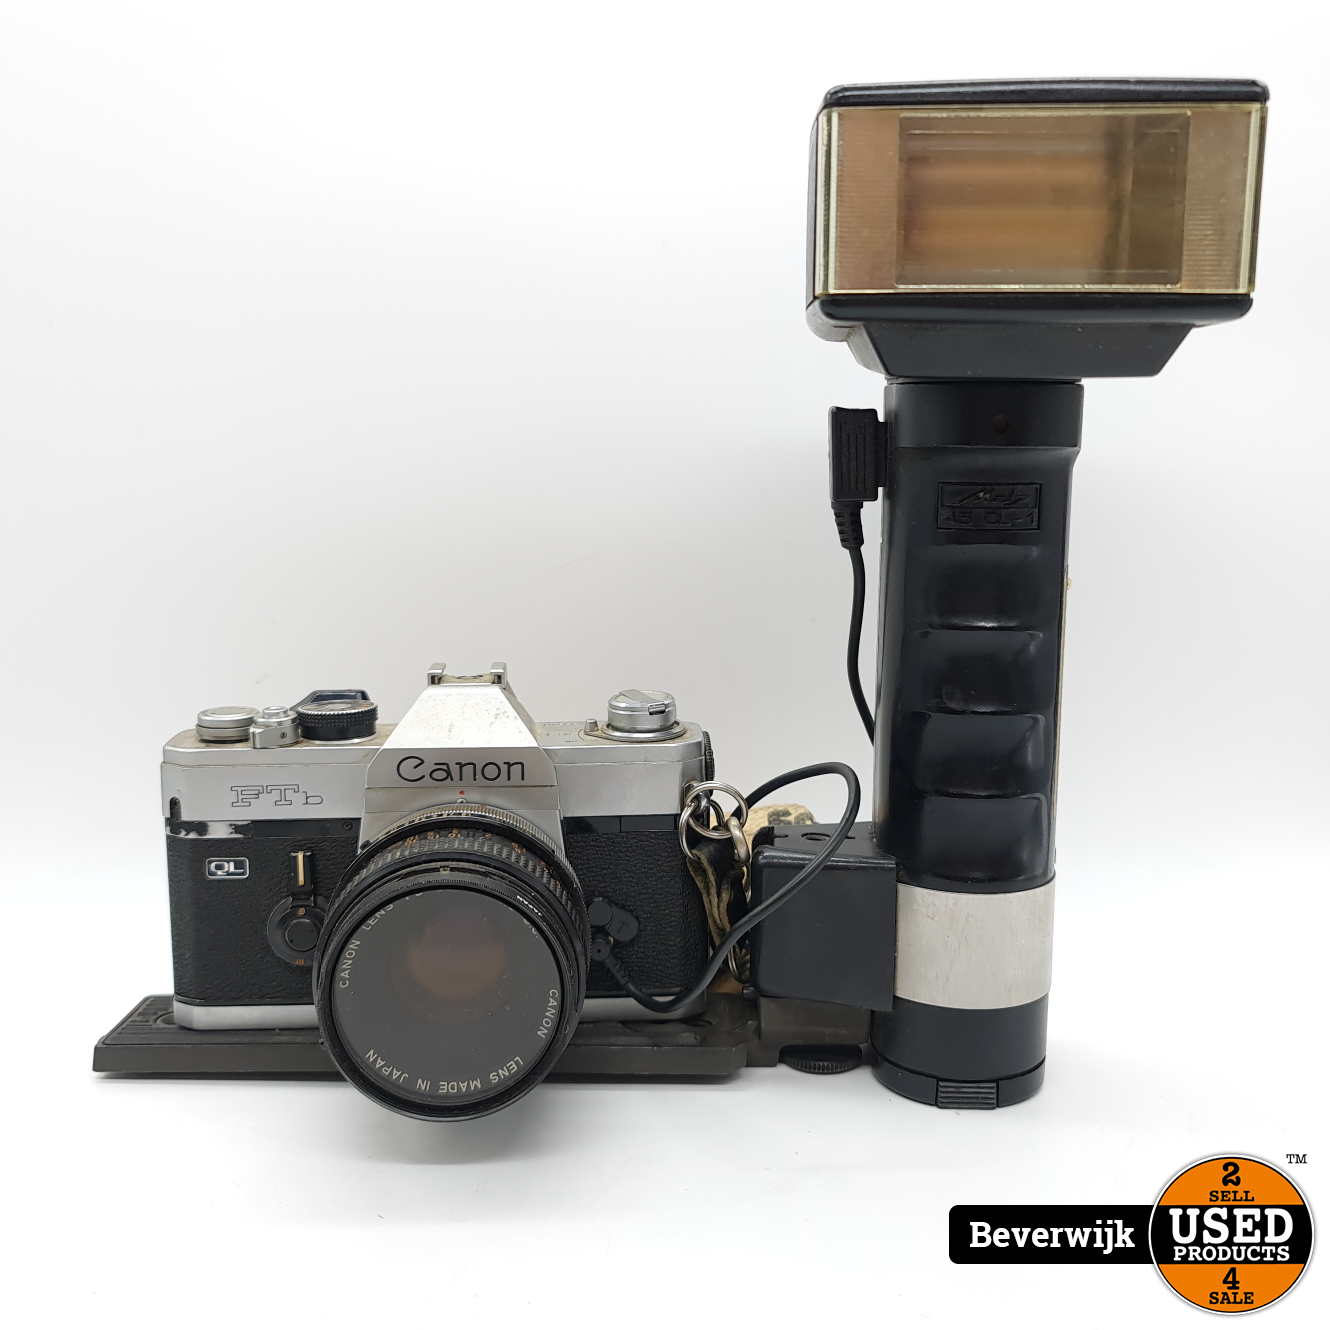 Gepensioneerd Polijsten taart Canon FTB Retro Camera met Flitser - In Goede Staat - Used Products  Beverwijk